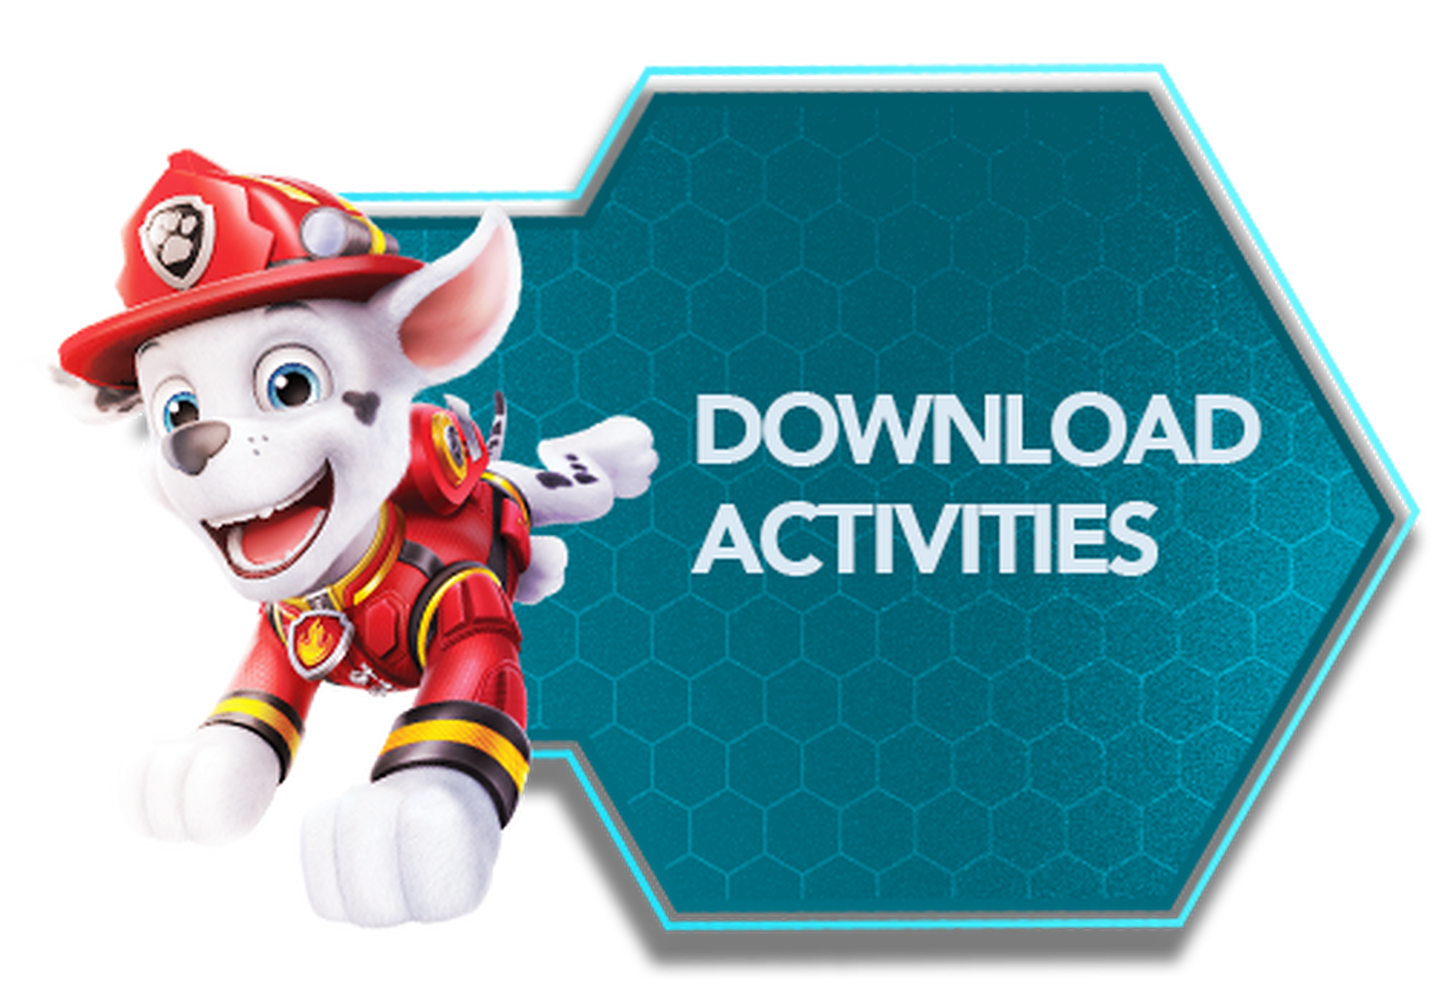 Download activities